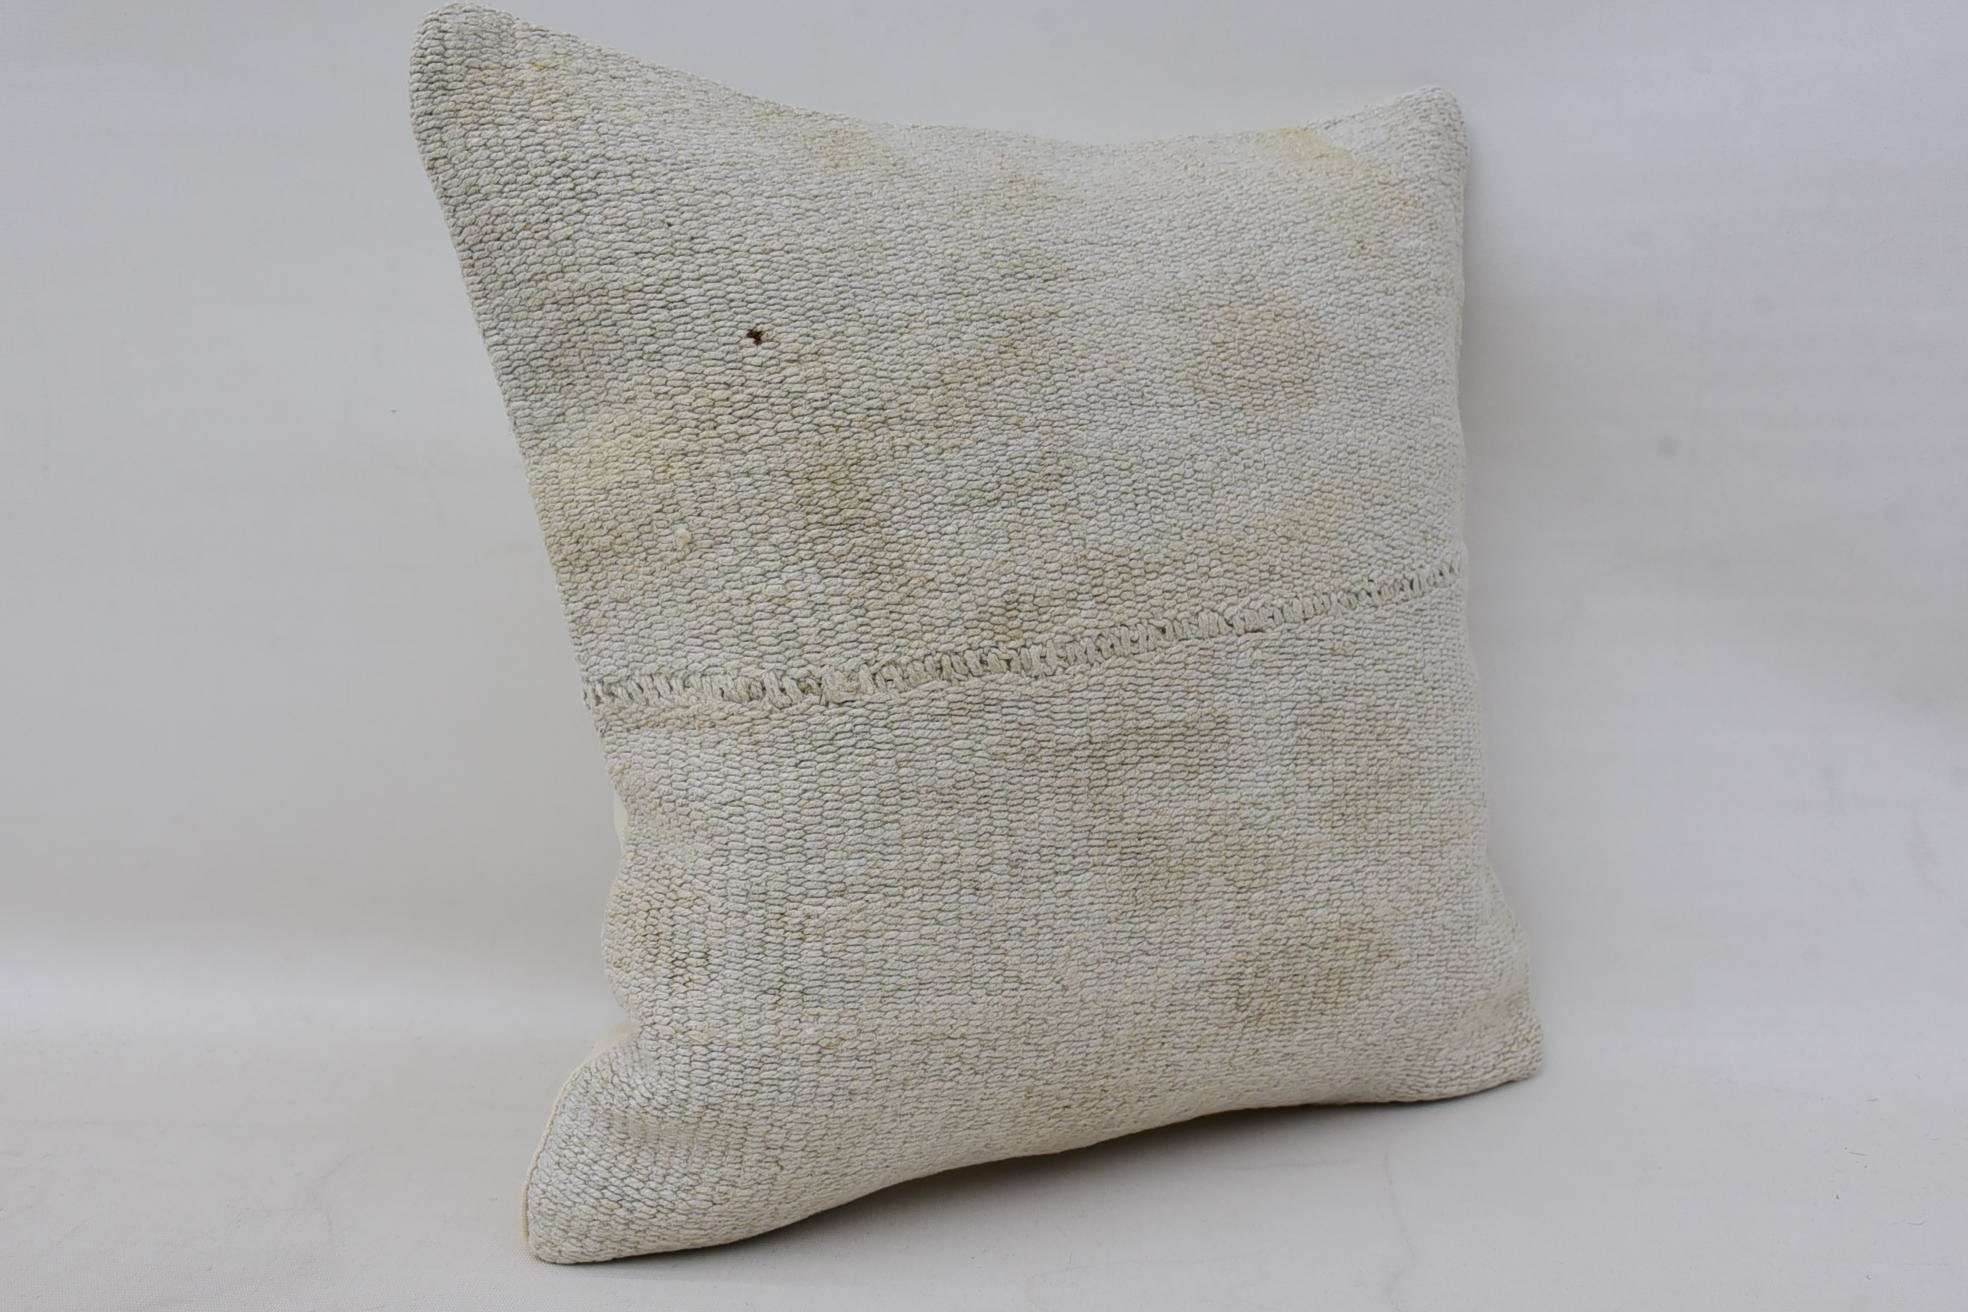 Antique Pillows, 14"x14" White Cushion, Vintage Kilim Throw Pillow, Handmade Kilim Cushion, Decorative Throw Pillow Sham